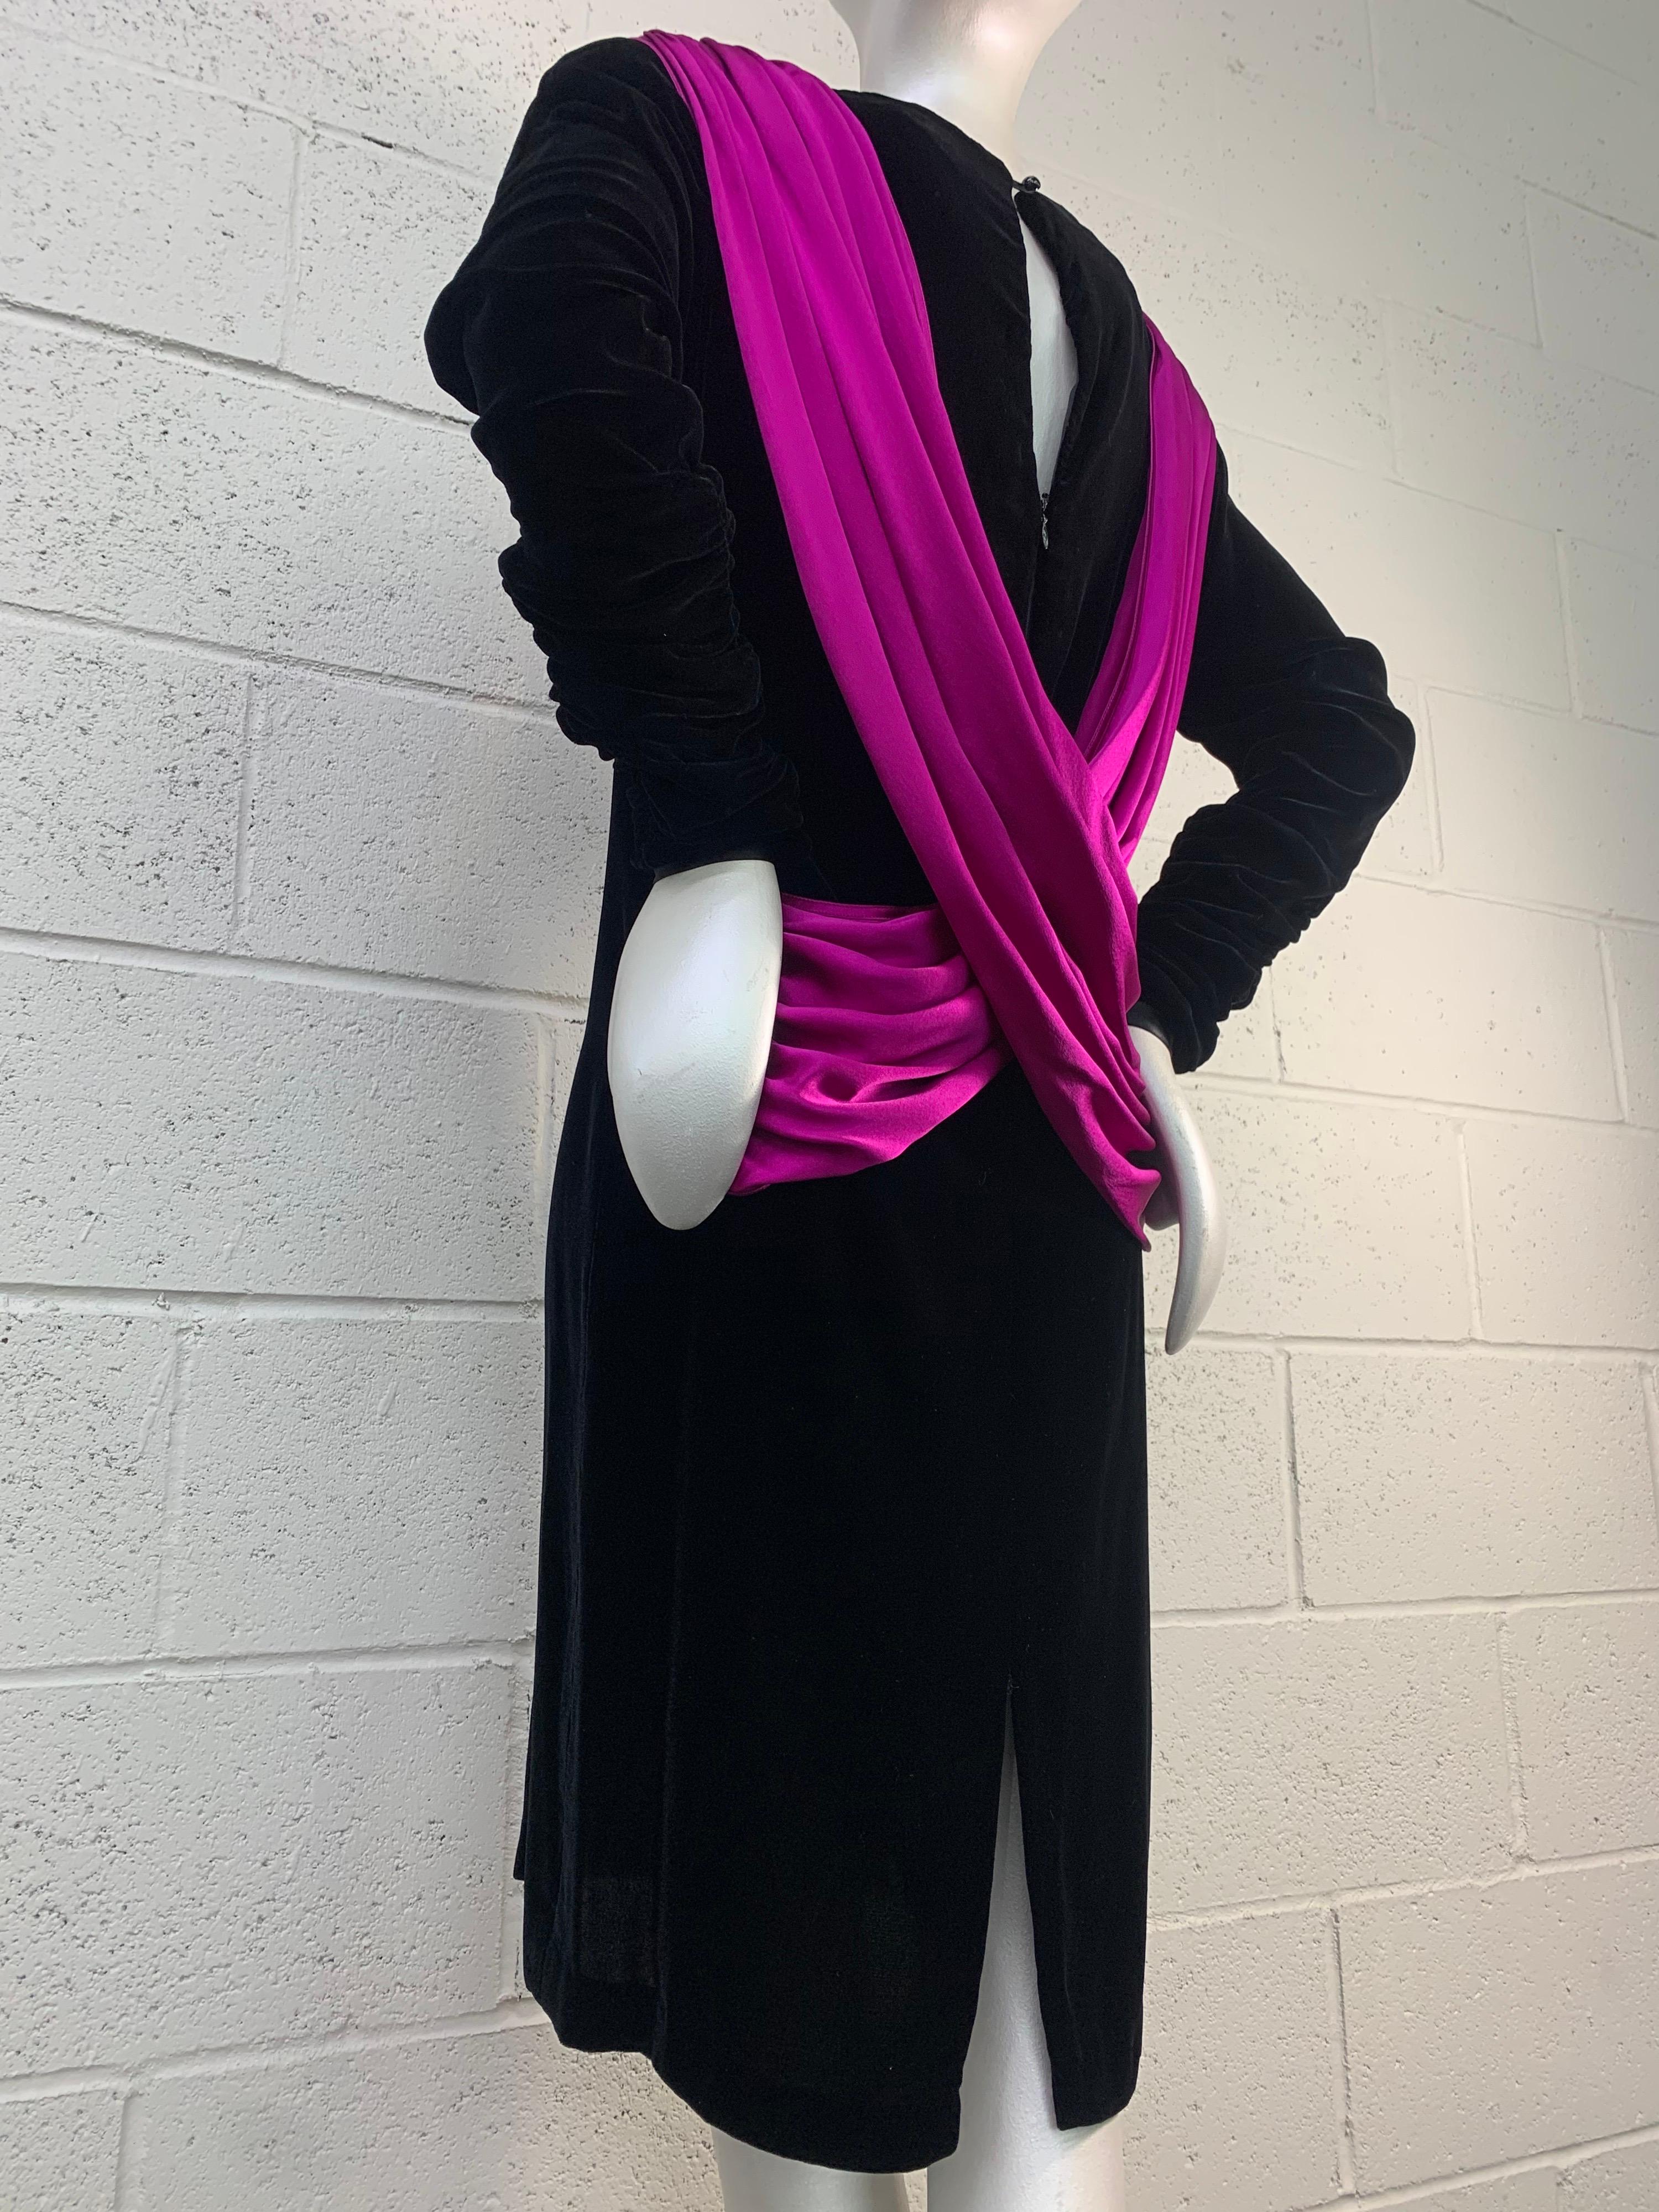 Women's 1980s Adam Beall Black Velvet 40s-Inspired Cocktail Dress w/ Fuchsia Draped Back For Sale